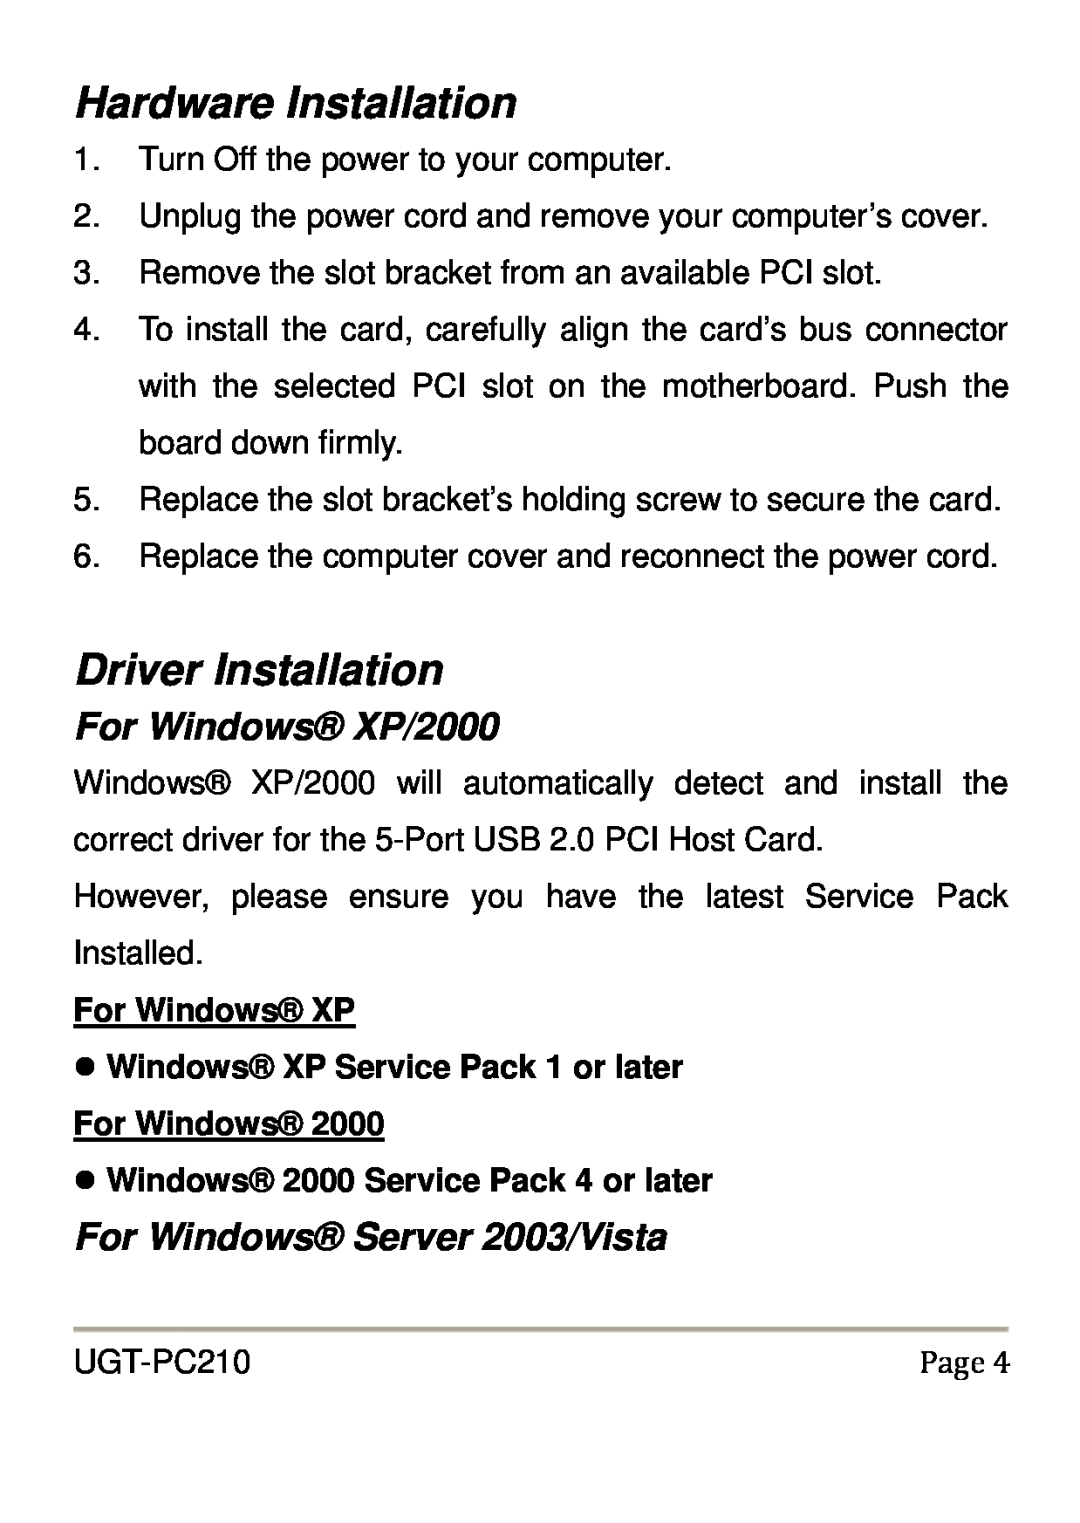 Vantec UGT-PC210 user manual Hardware Installation, Driver Installation, For Windows XP/2000, For Windows Server 2003/Vista 